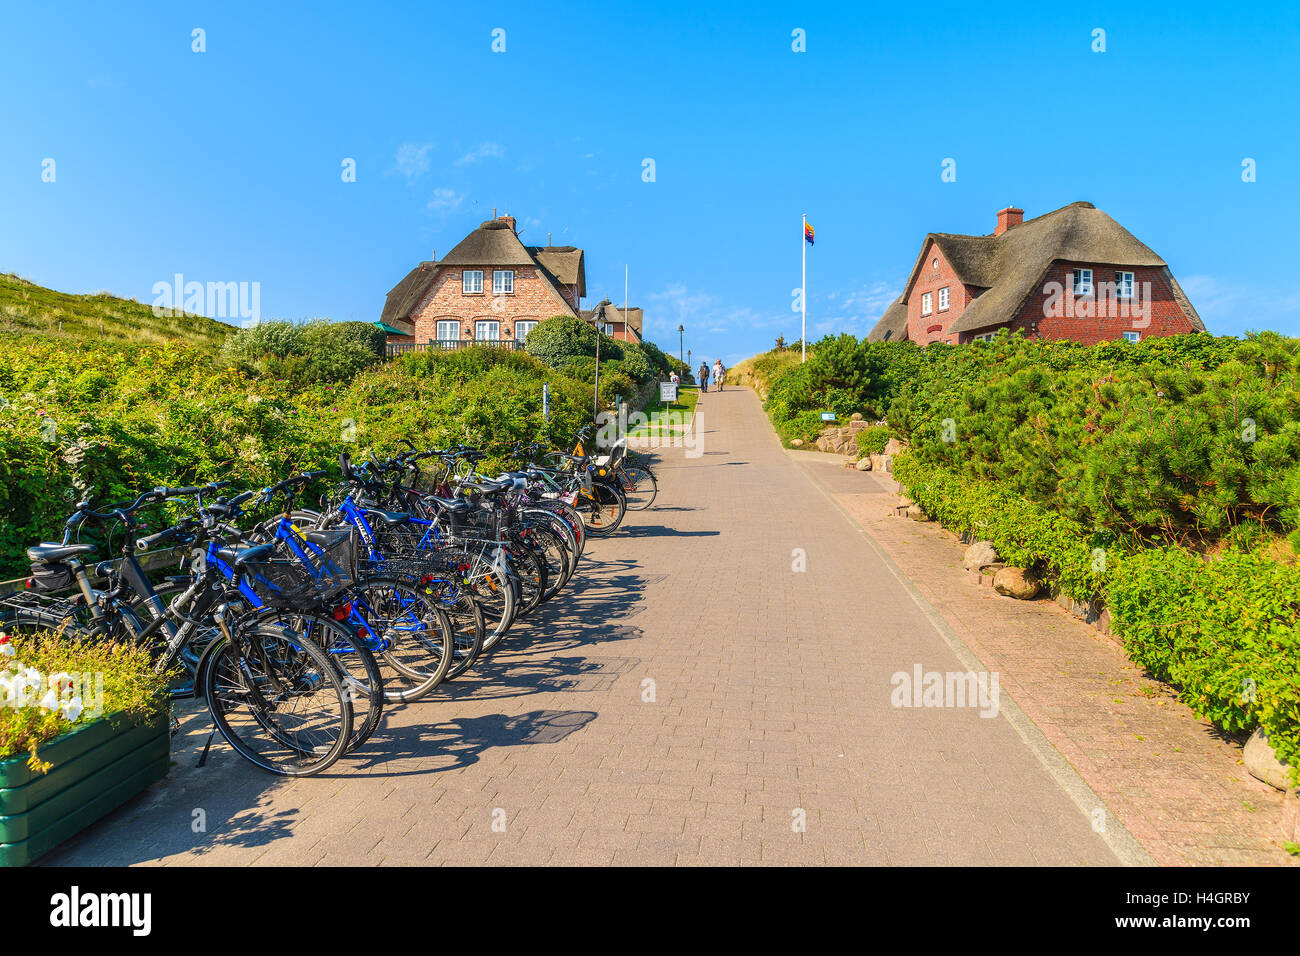 Isola di Sylt, Germania - SET 8, 2016: Biciclette parcheggiate lungo una strada a Rantum villaggio sulla costa meridionale dell'isola di Sylt, Germania. Foto Stock